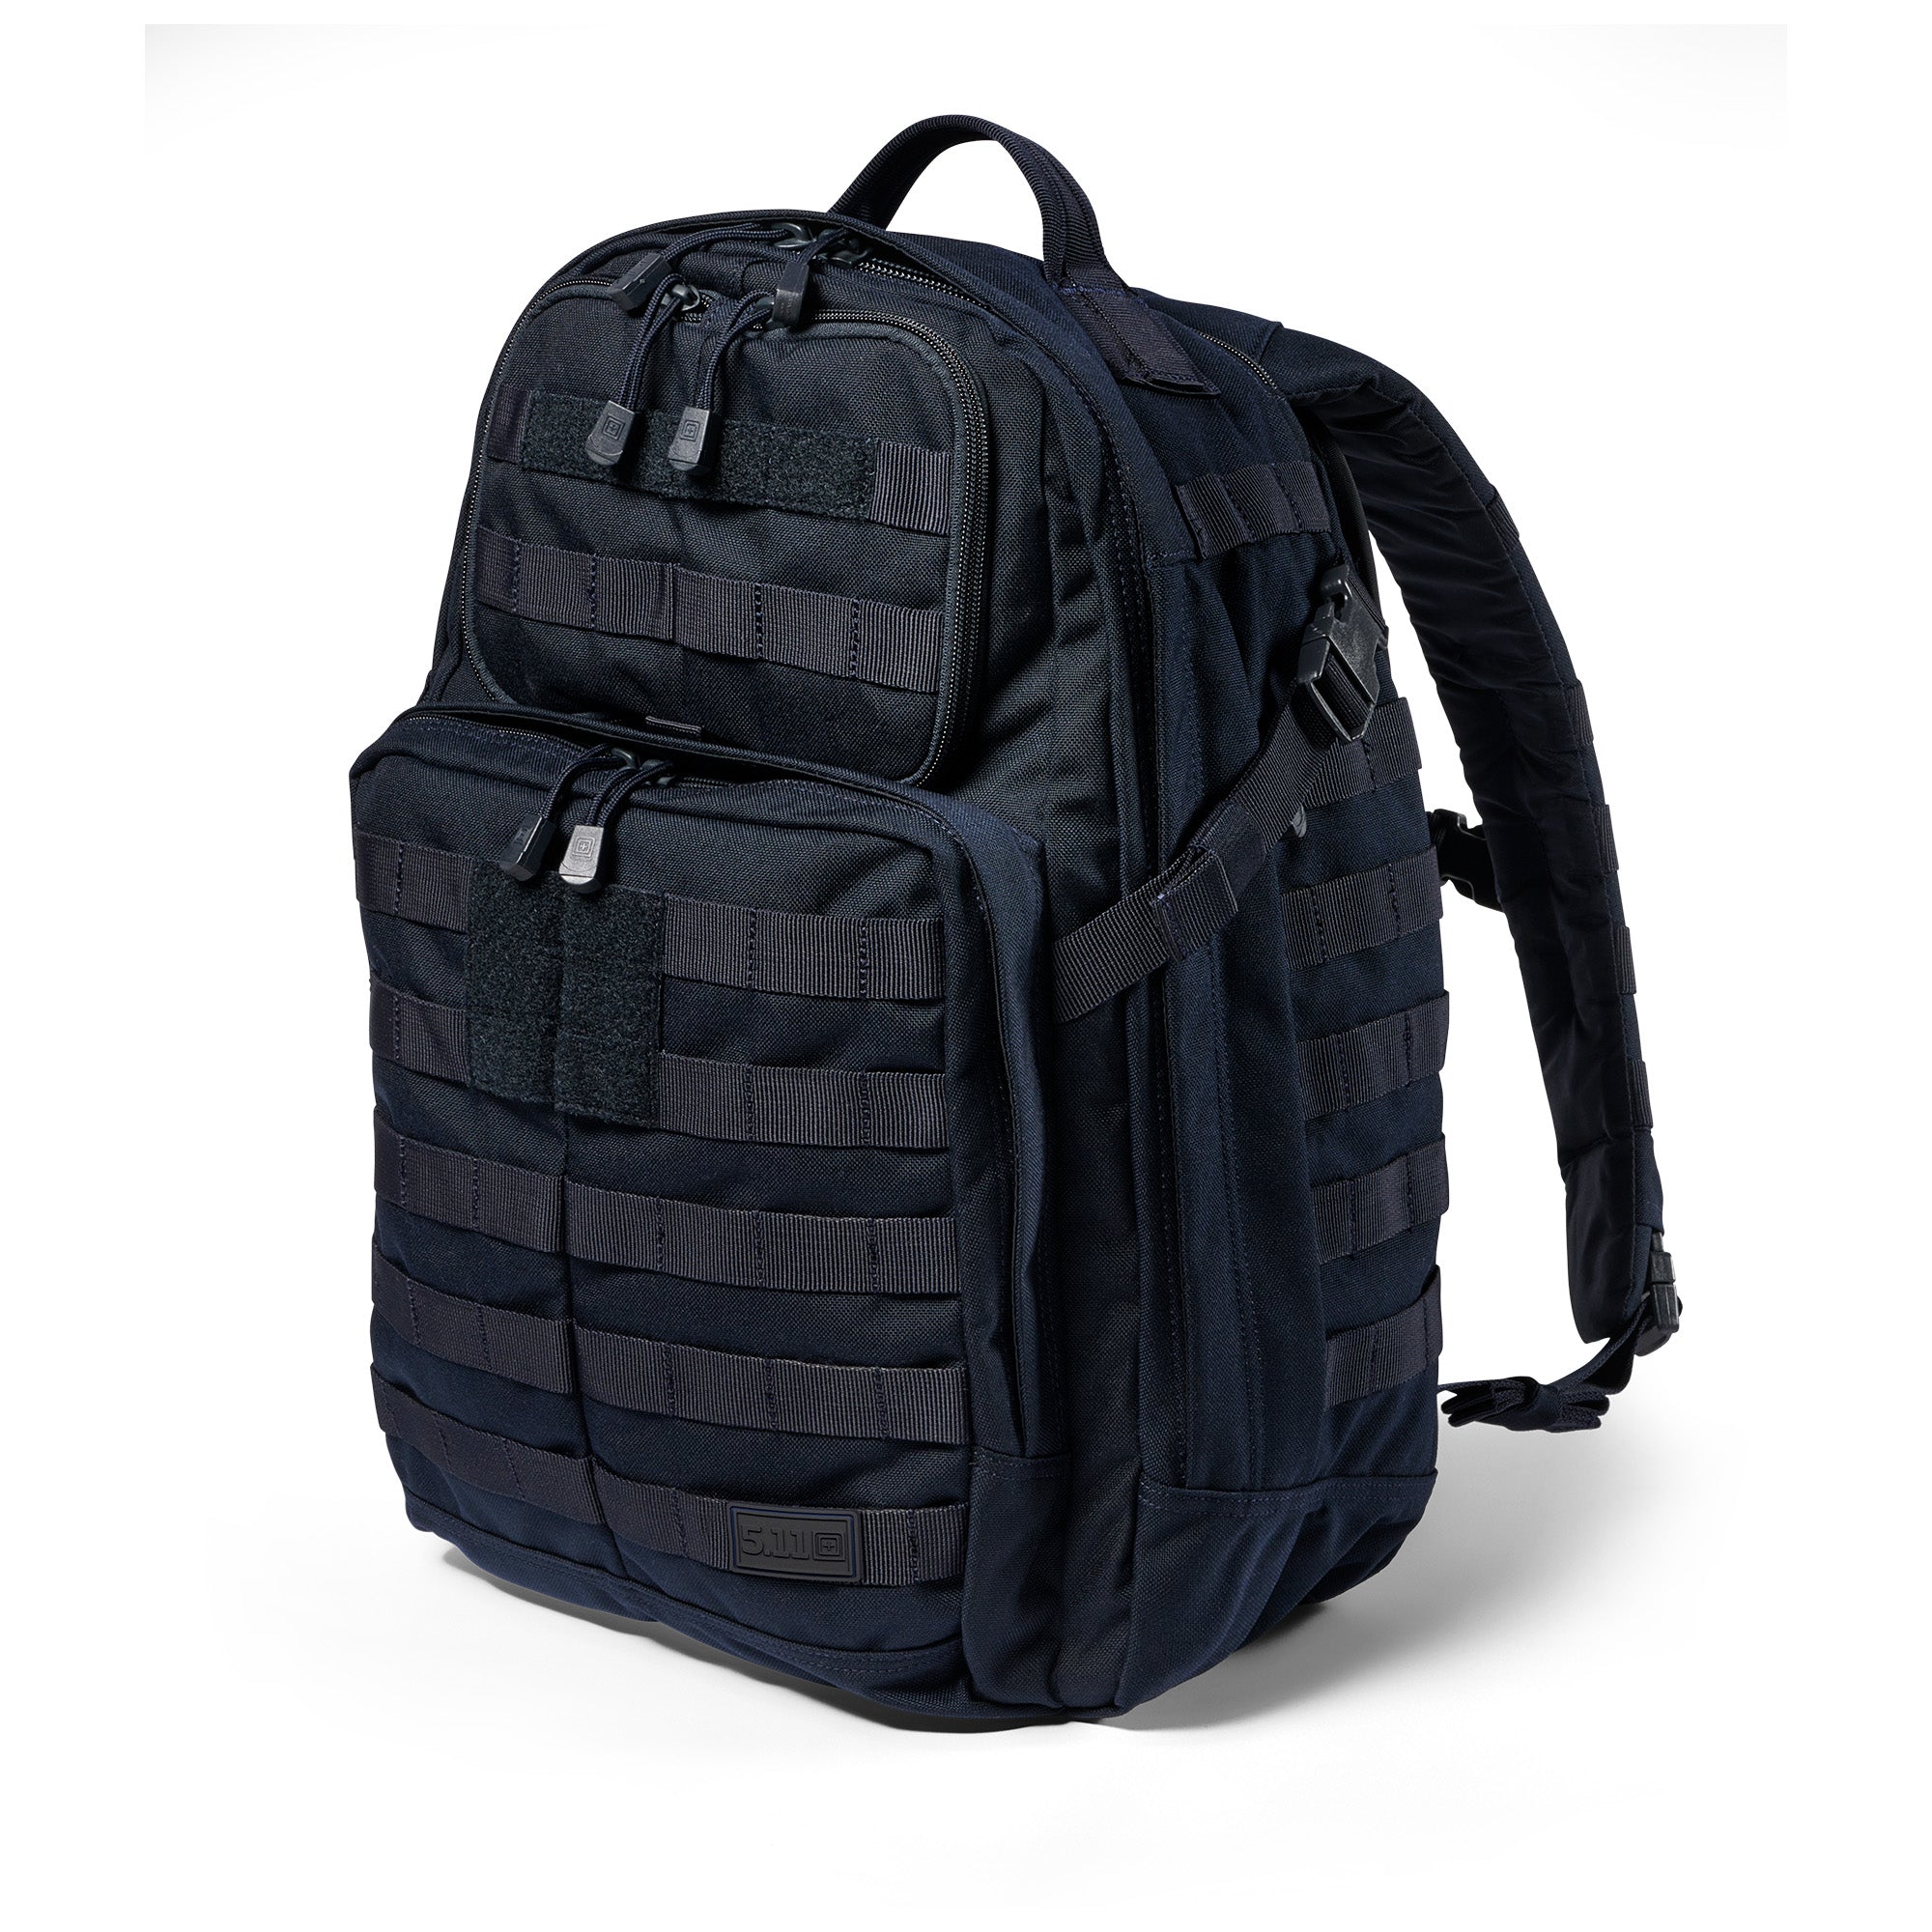 【値下げ中】5.11 Tactical Rush24 Backpack/リュック